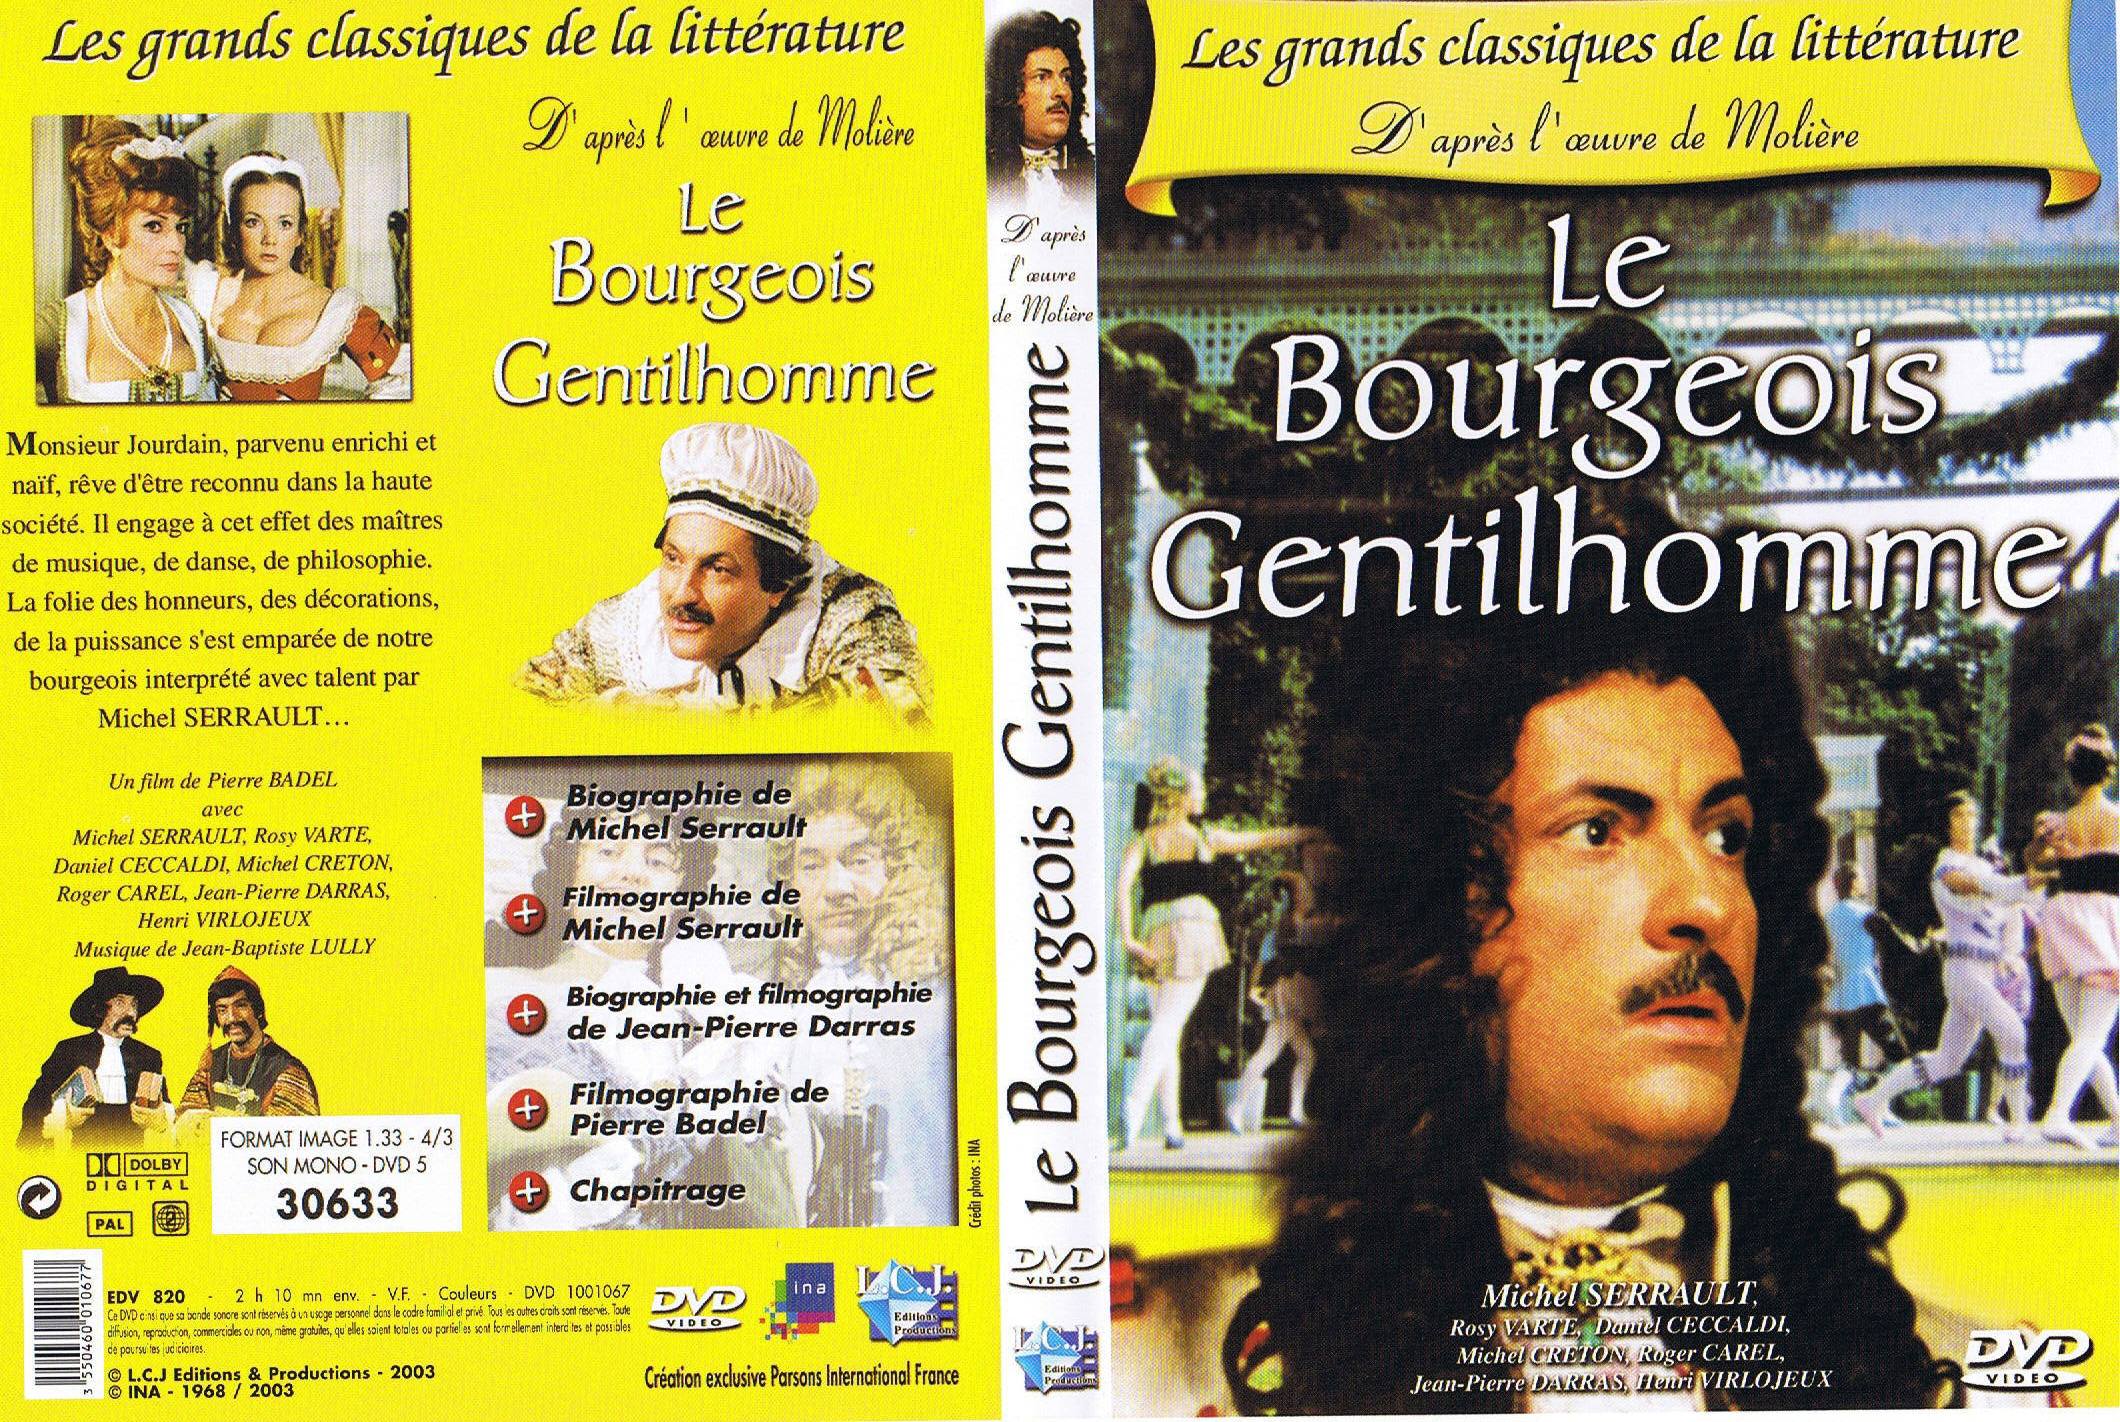 Jaquette DVD Le bourgeois gentilhomme (Serrault)